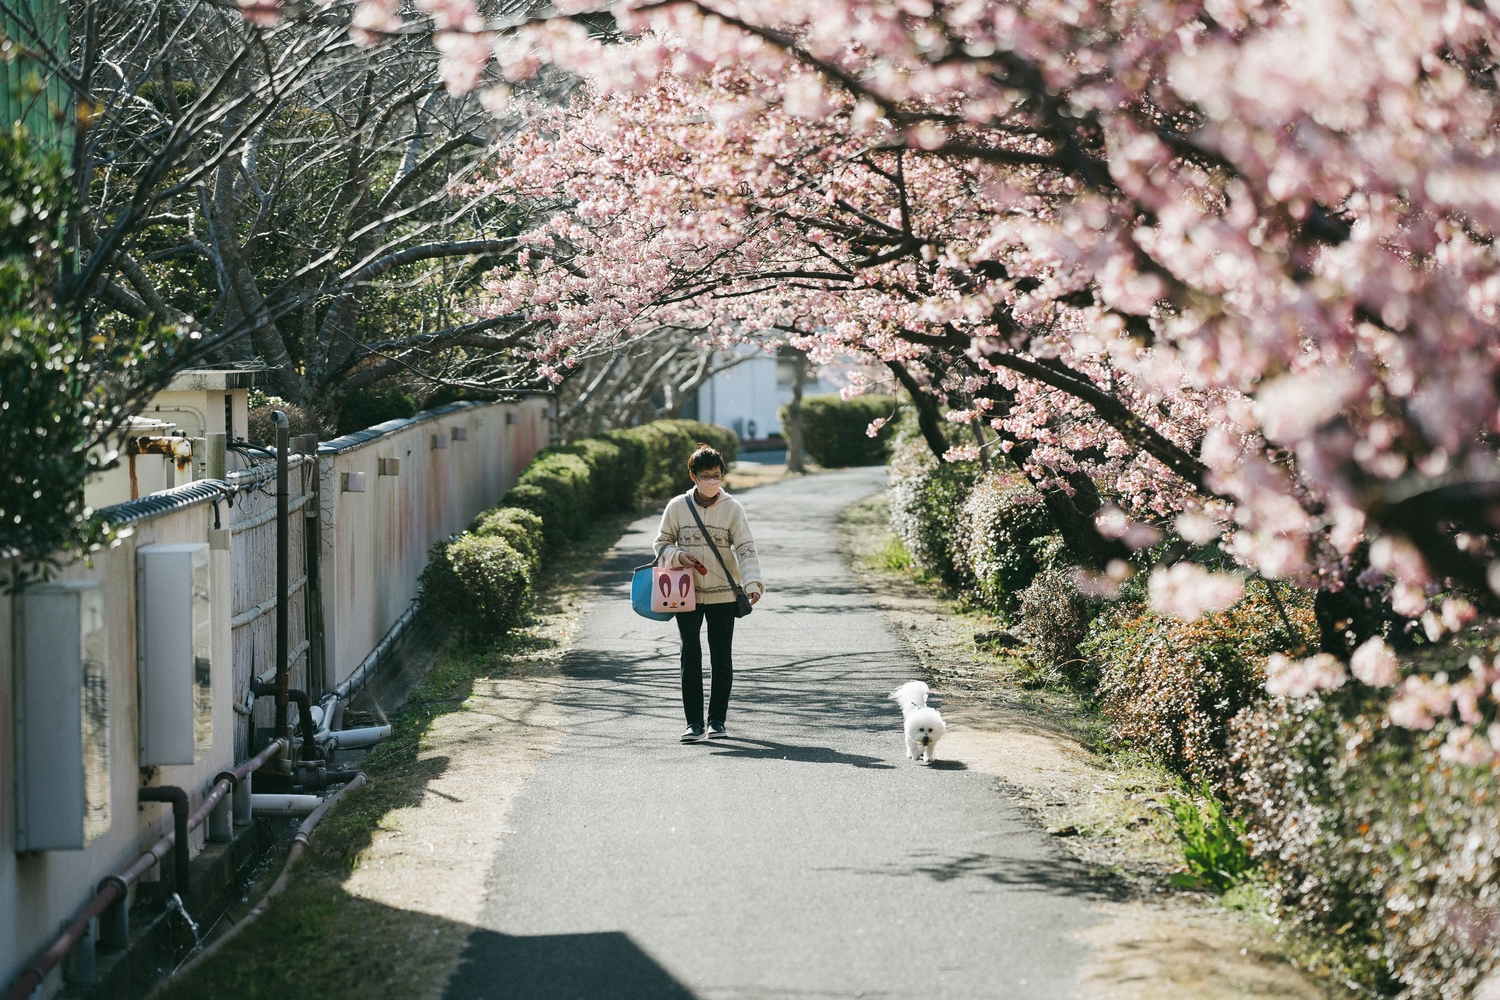 桜の見頃を迎えてものんびり散策できるのが南伊豆町の魅力